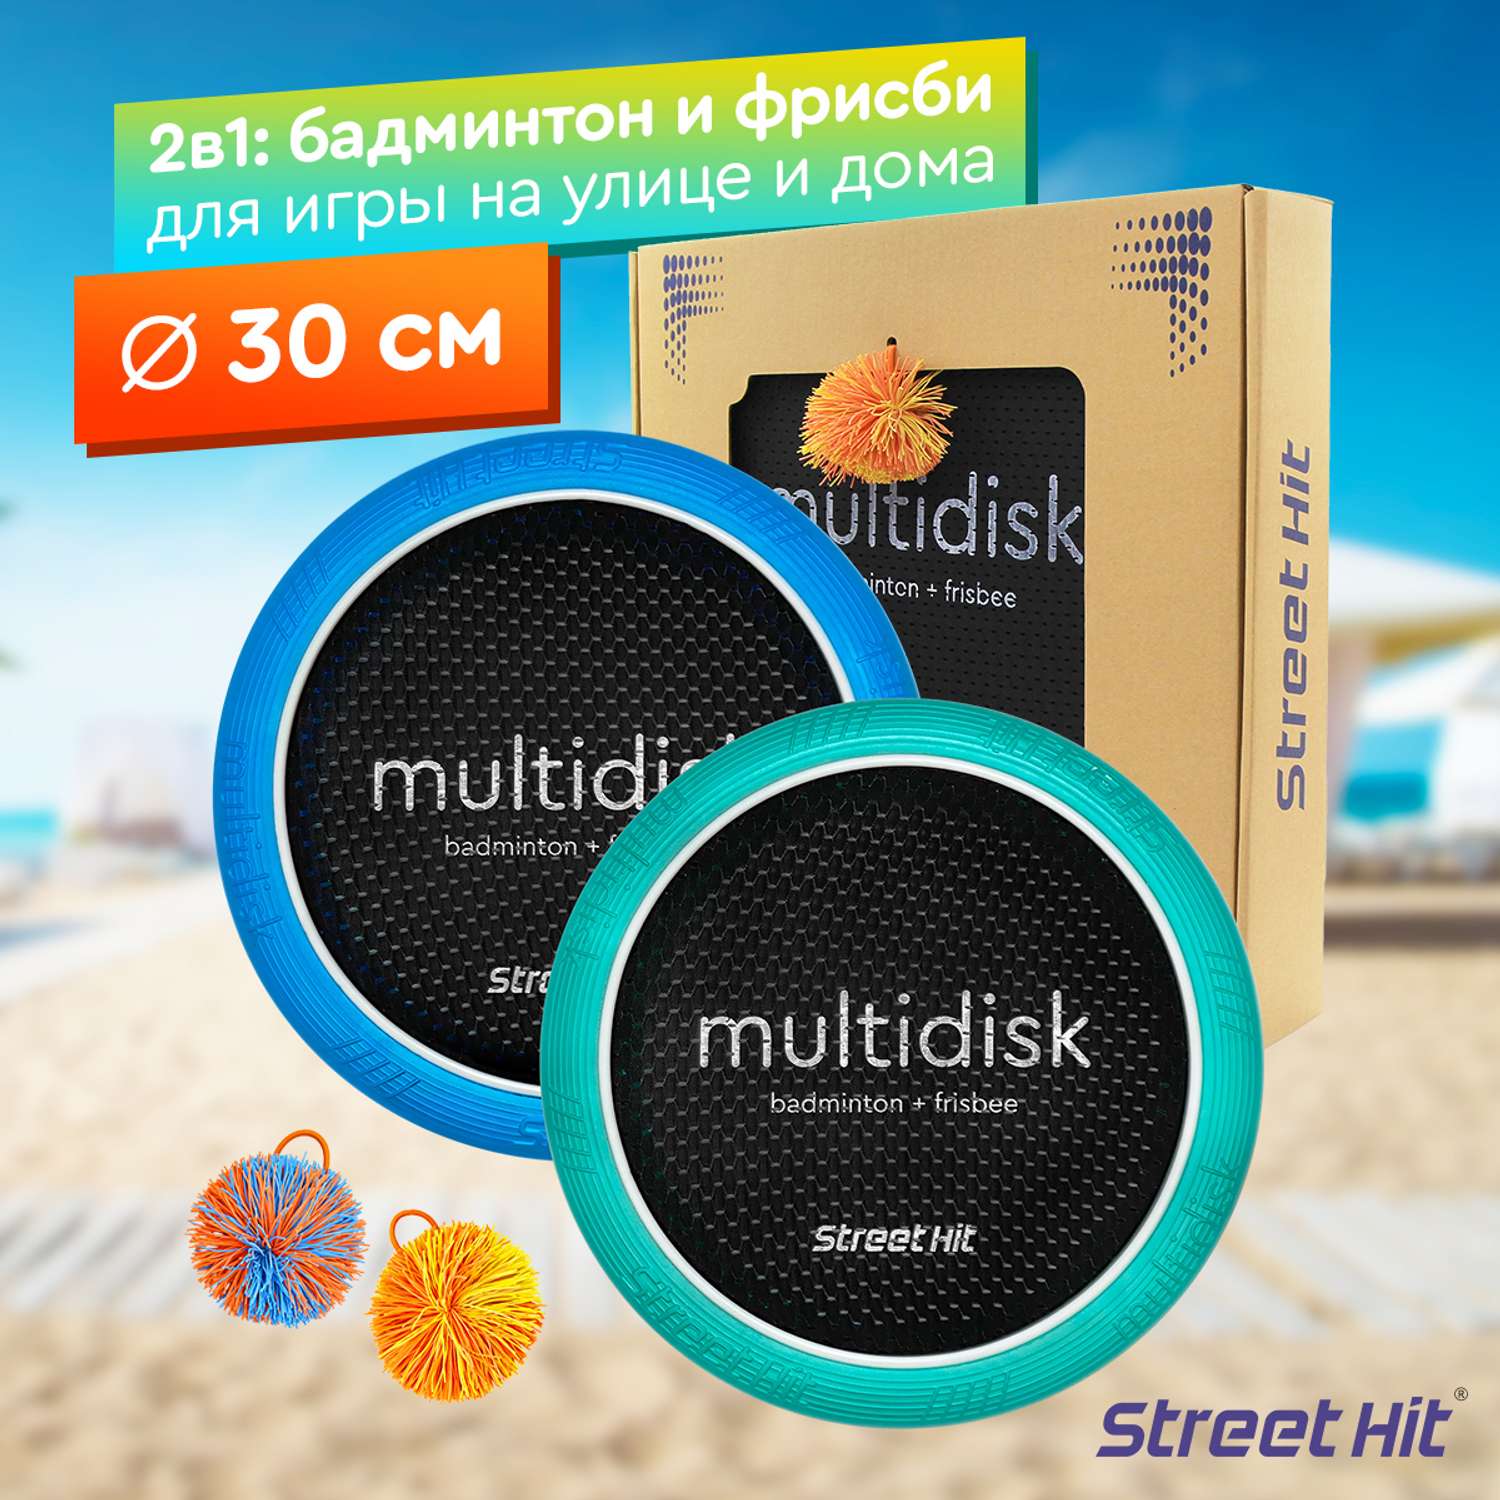 Набор для игры Street Hit Мультидиск Mini 30 см мятно-синий - фото 1